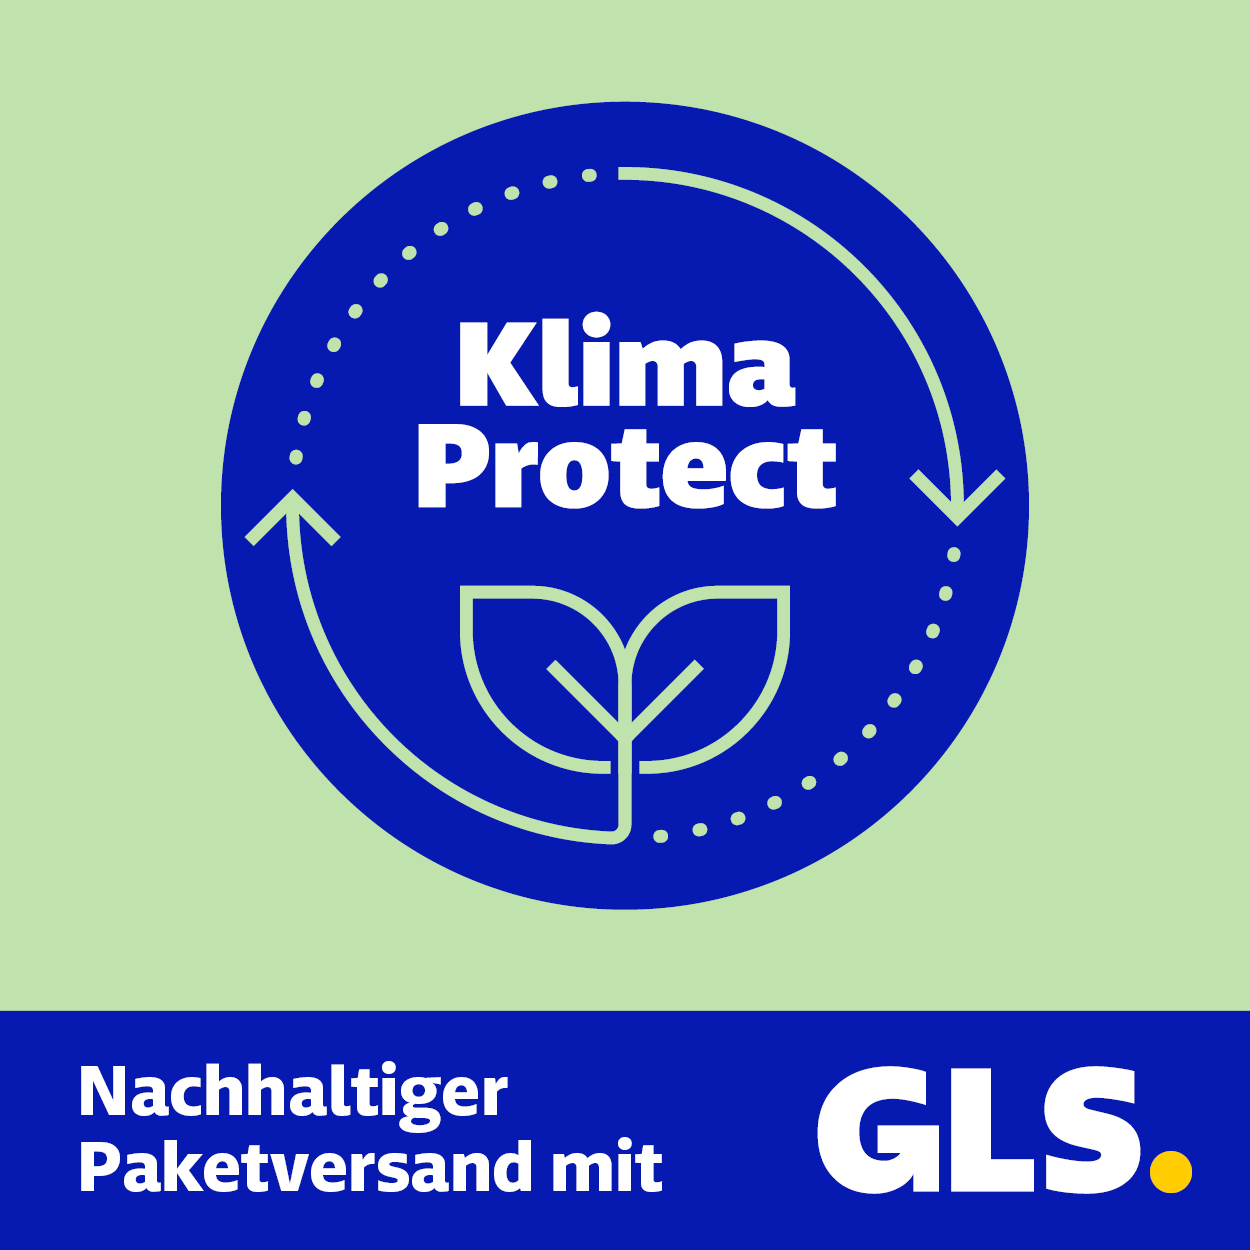 GLS_KlimaProtect-Emblem-Kunden_2022-03-22-FINAL-RGB